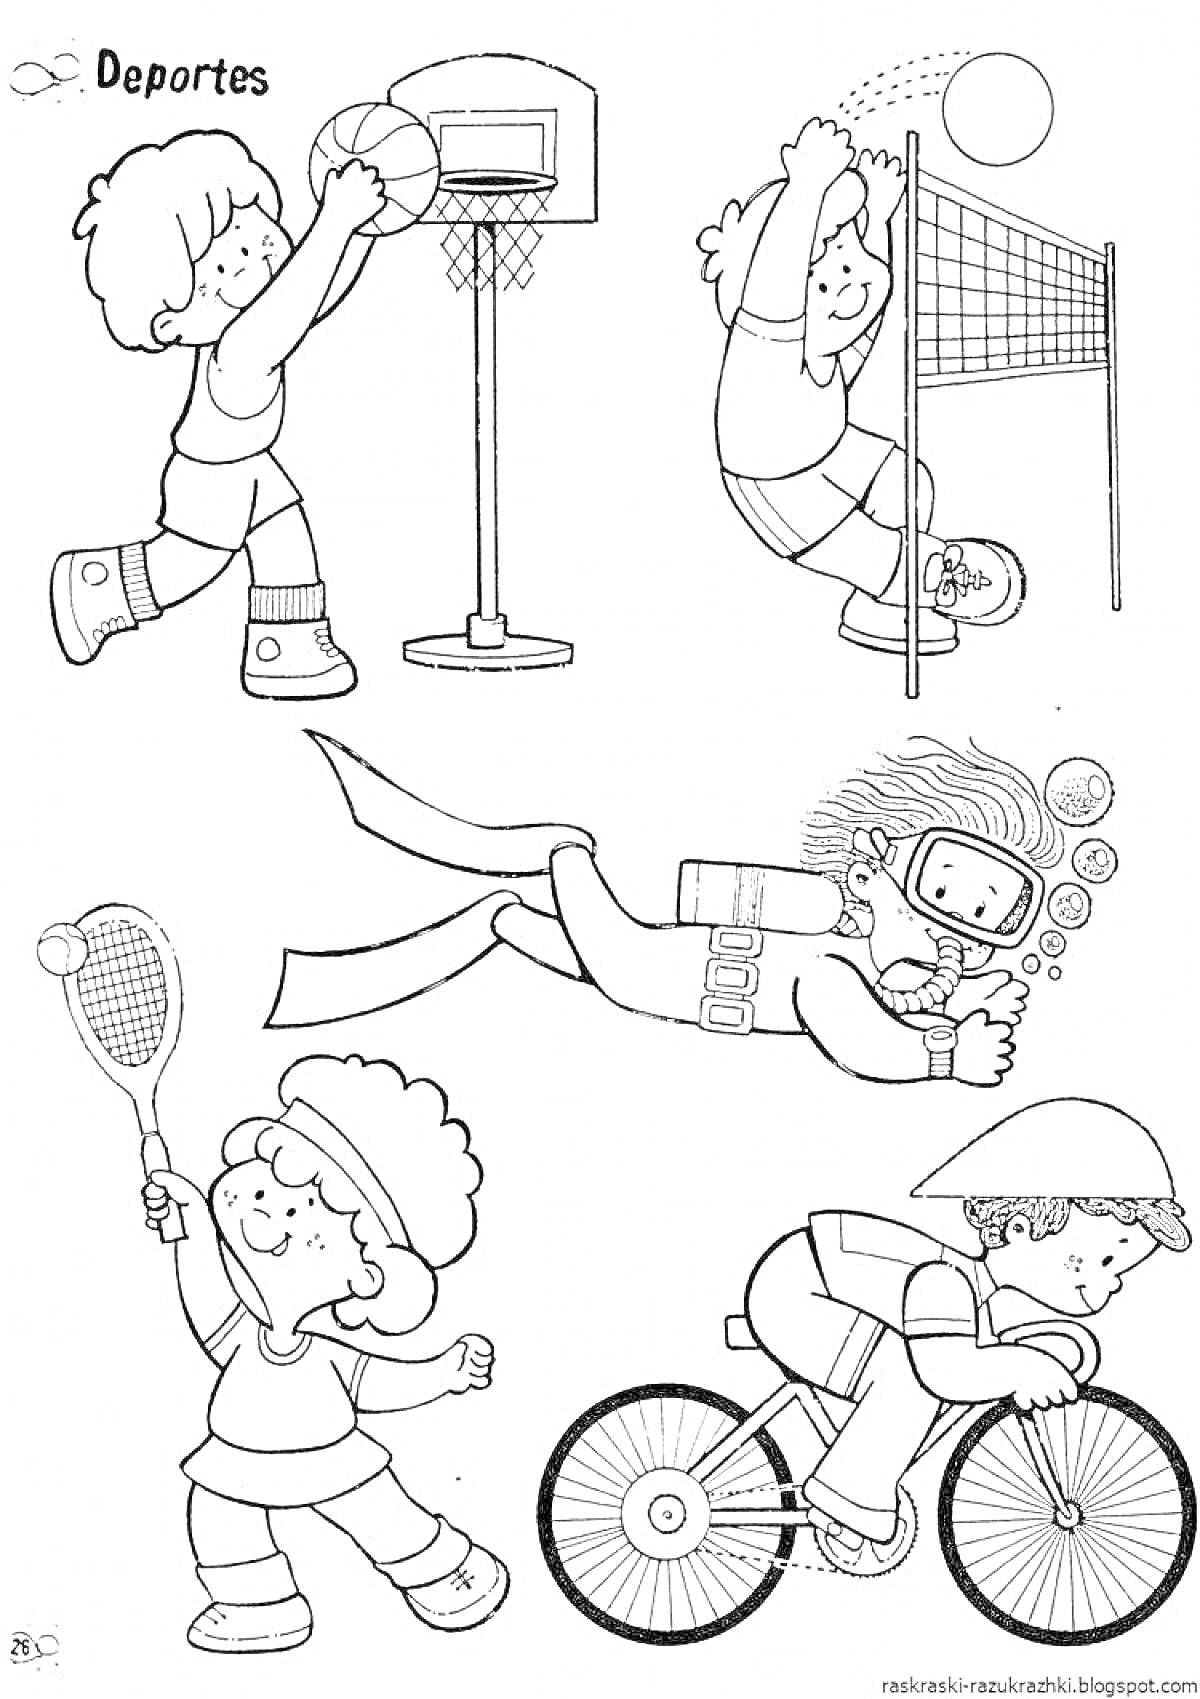 Раскраска Раскраска с изображением детей, занимающихся спортом (баскетбол, волейбол, теннис, плавание, езда на велосипеде)